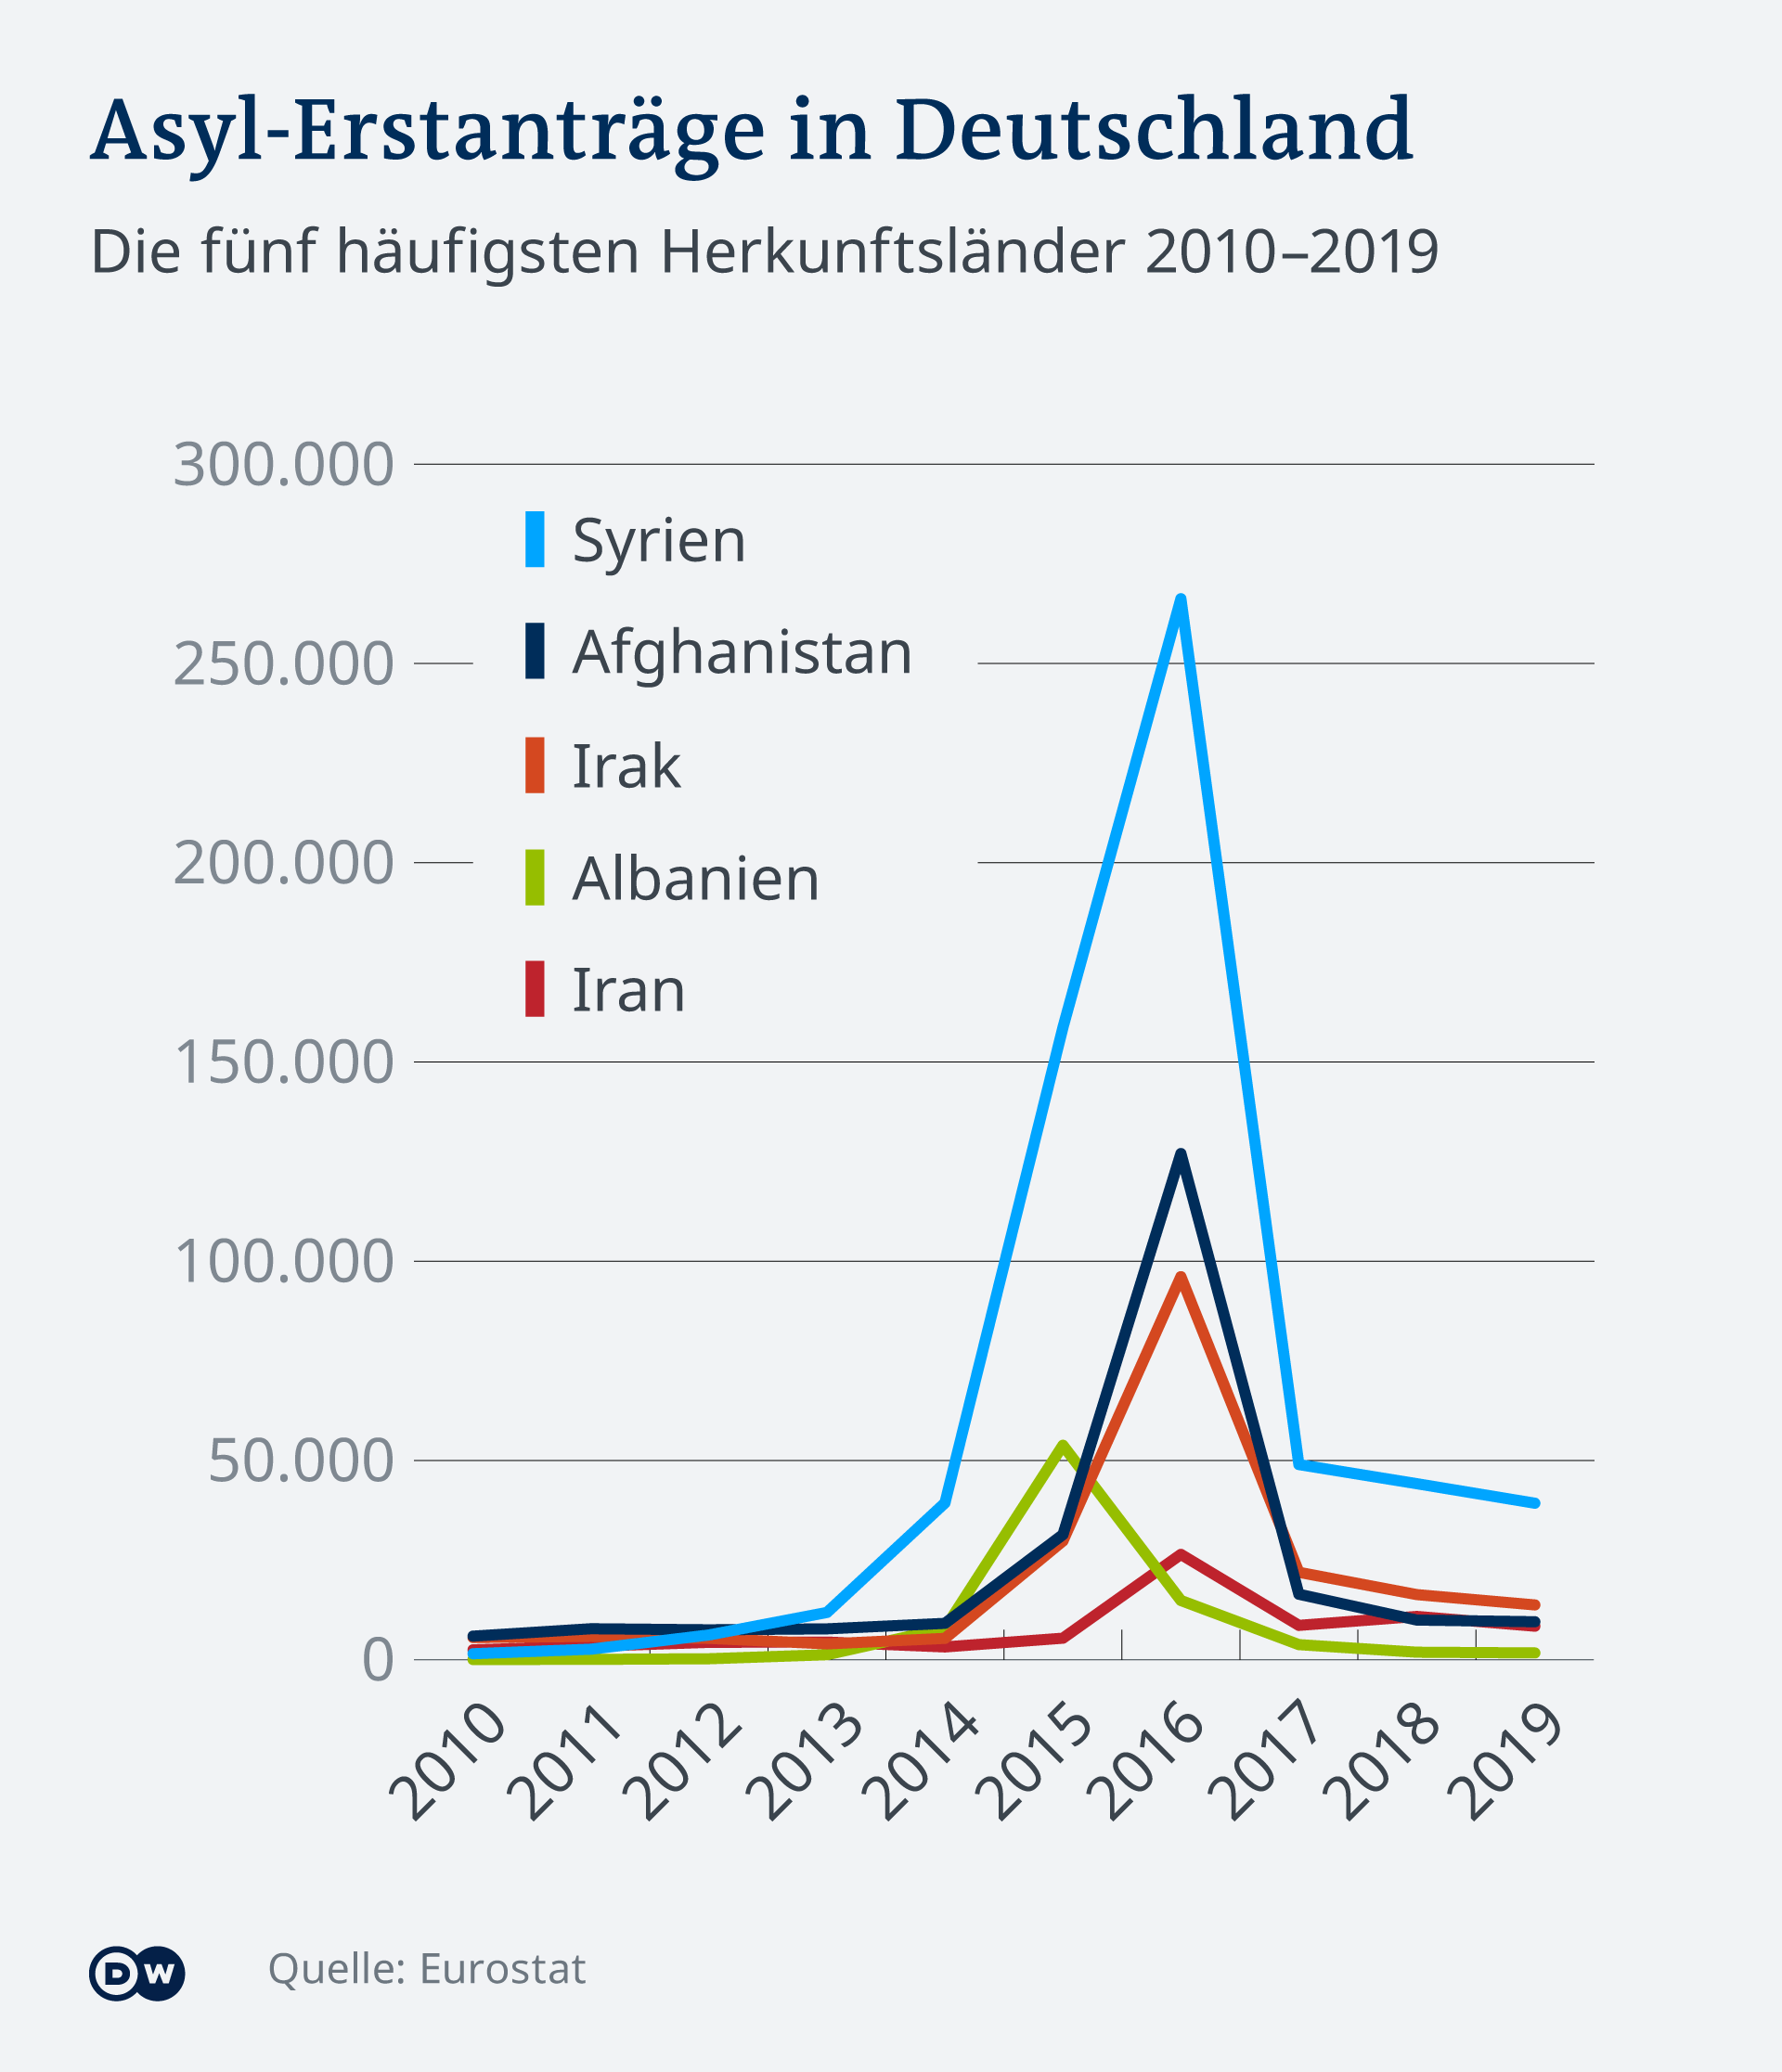 Pet zemalja iz kojih su najčešće stizali podnositelji zahtjeva za azil i njihov broj u razdoblju od 2010. do 2019. godine